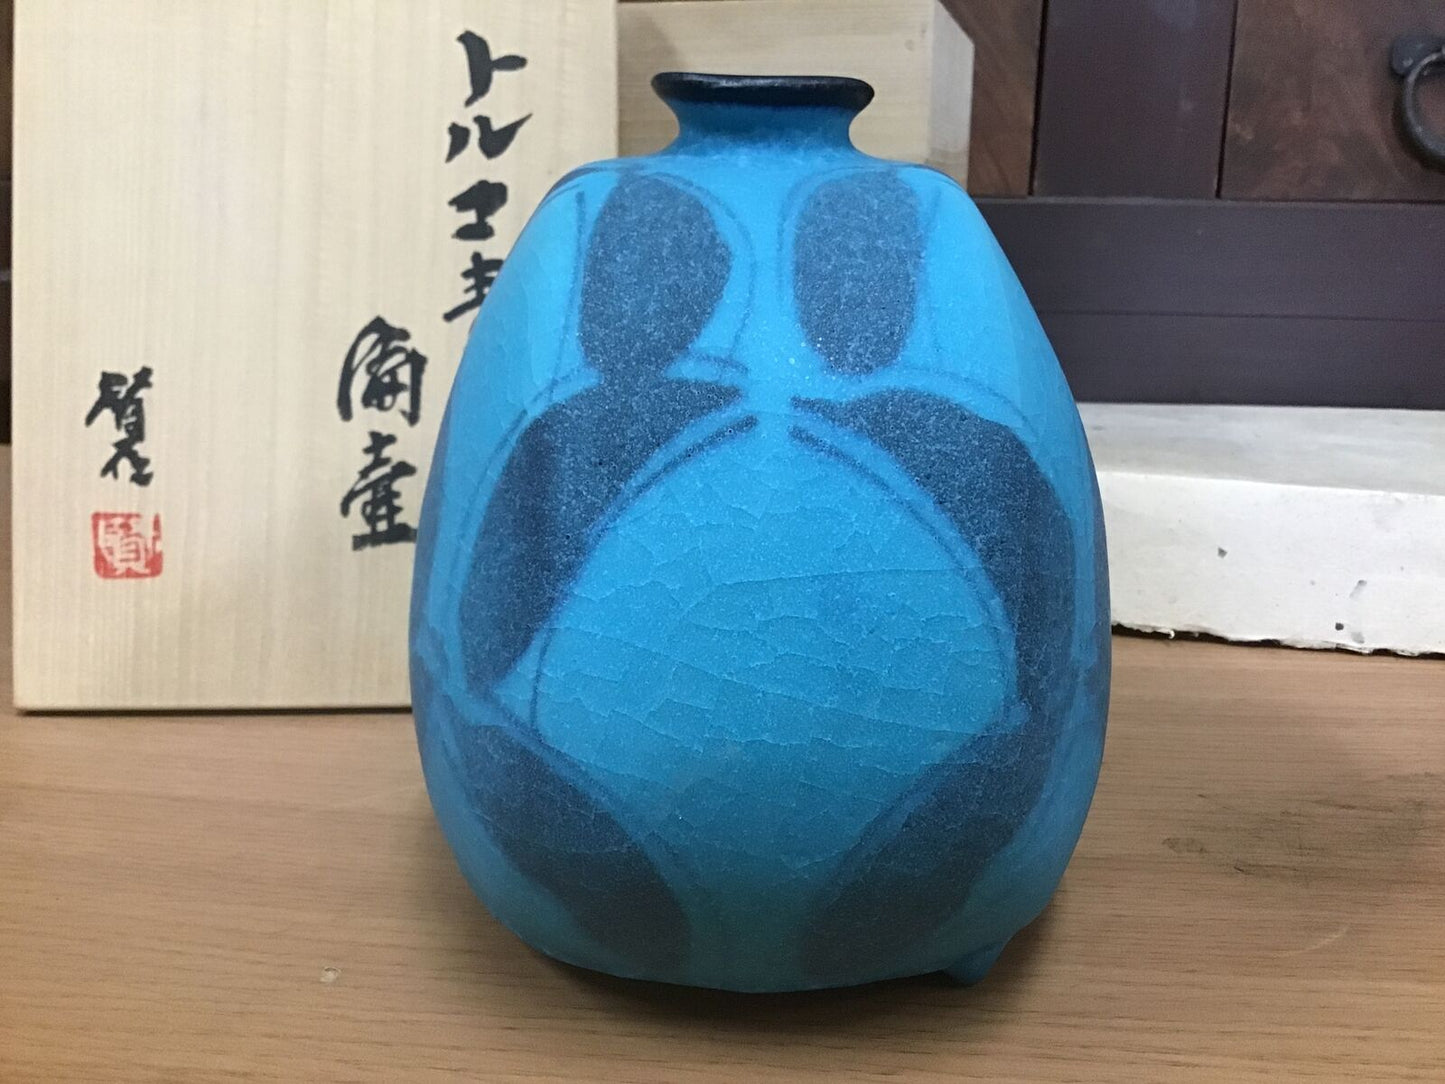 Y0981 VASE turquoise blue glaze signed box Japanese antique tsubo Japan